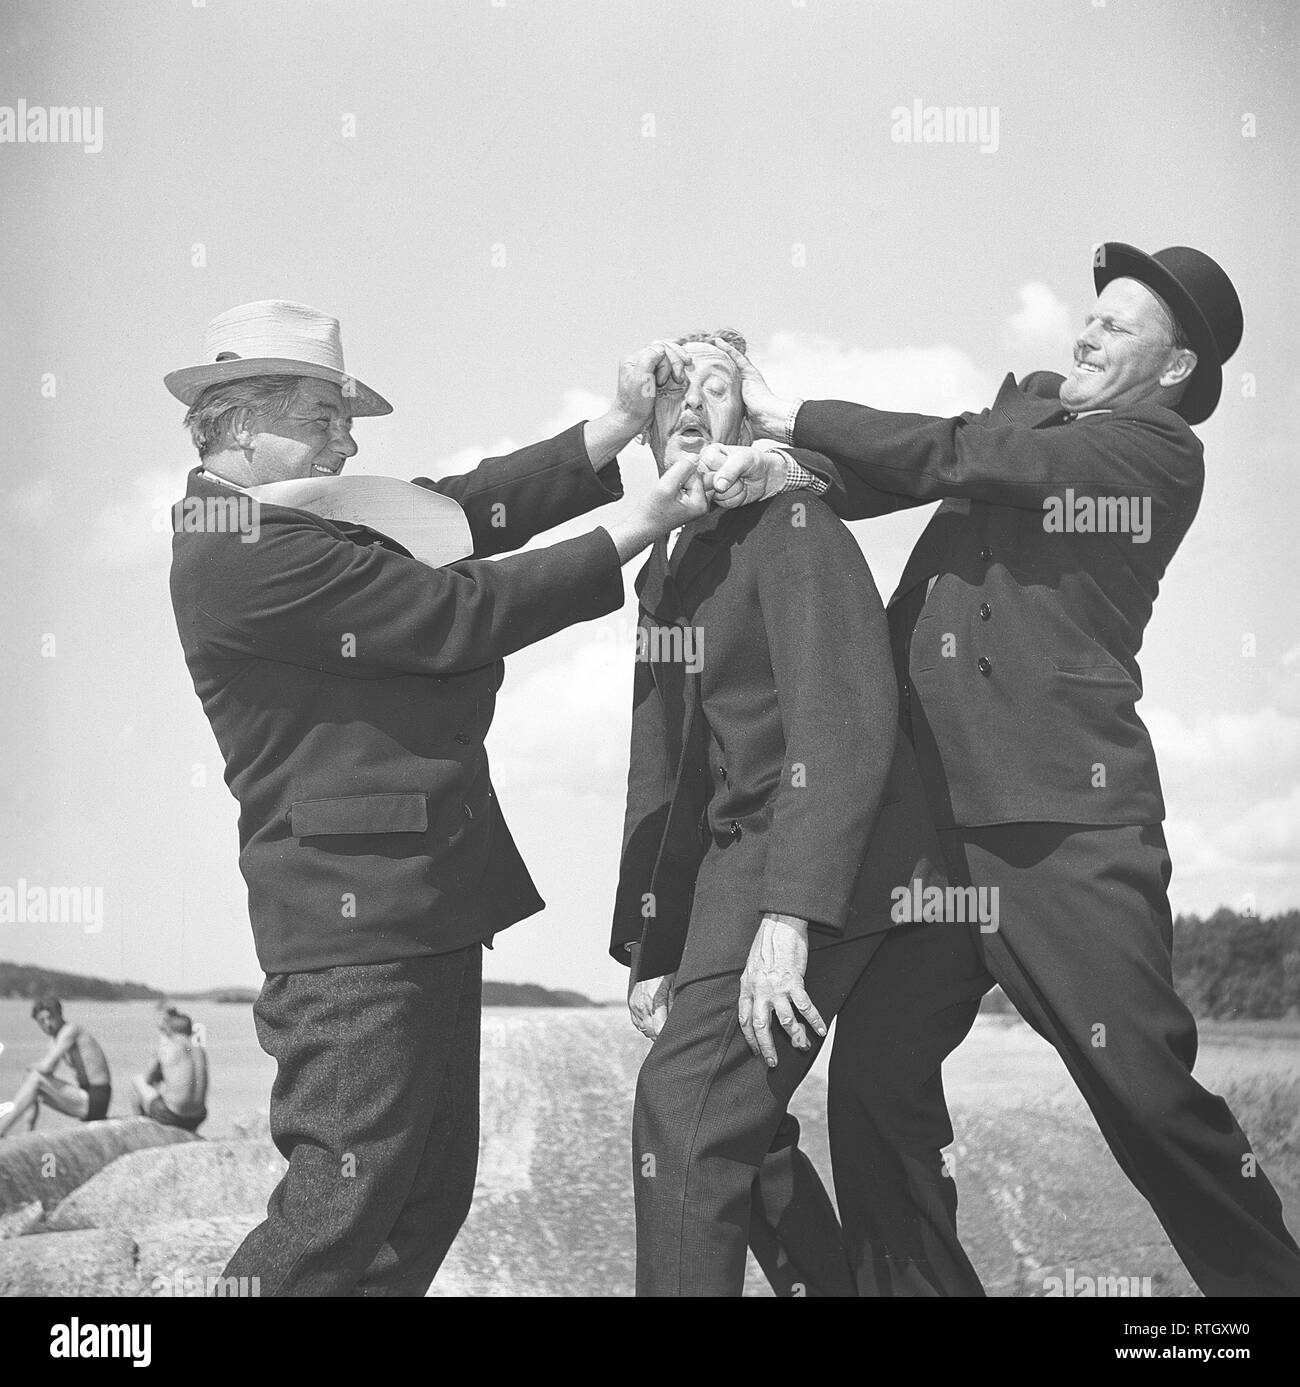 Gli uomini di 1940s. Una strana immagine di tre uomini coinvolti in un argomento di fisica, con una apparentemente innocente catturati nel mezzo. Foto Kristoffersson Ref P49-4. La Svezia 1945 Foto Stock